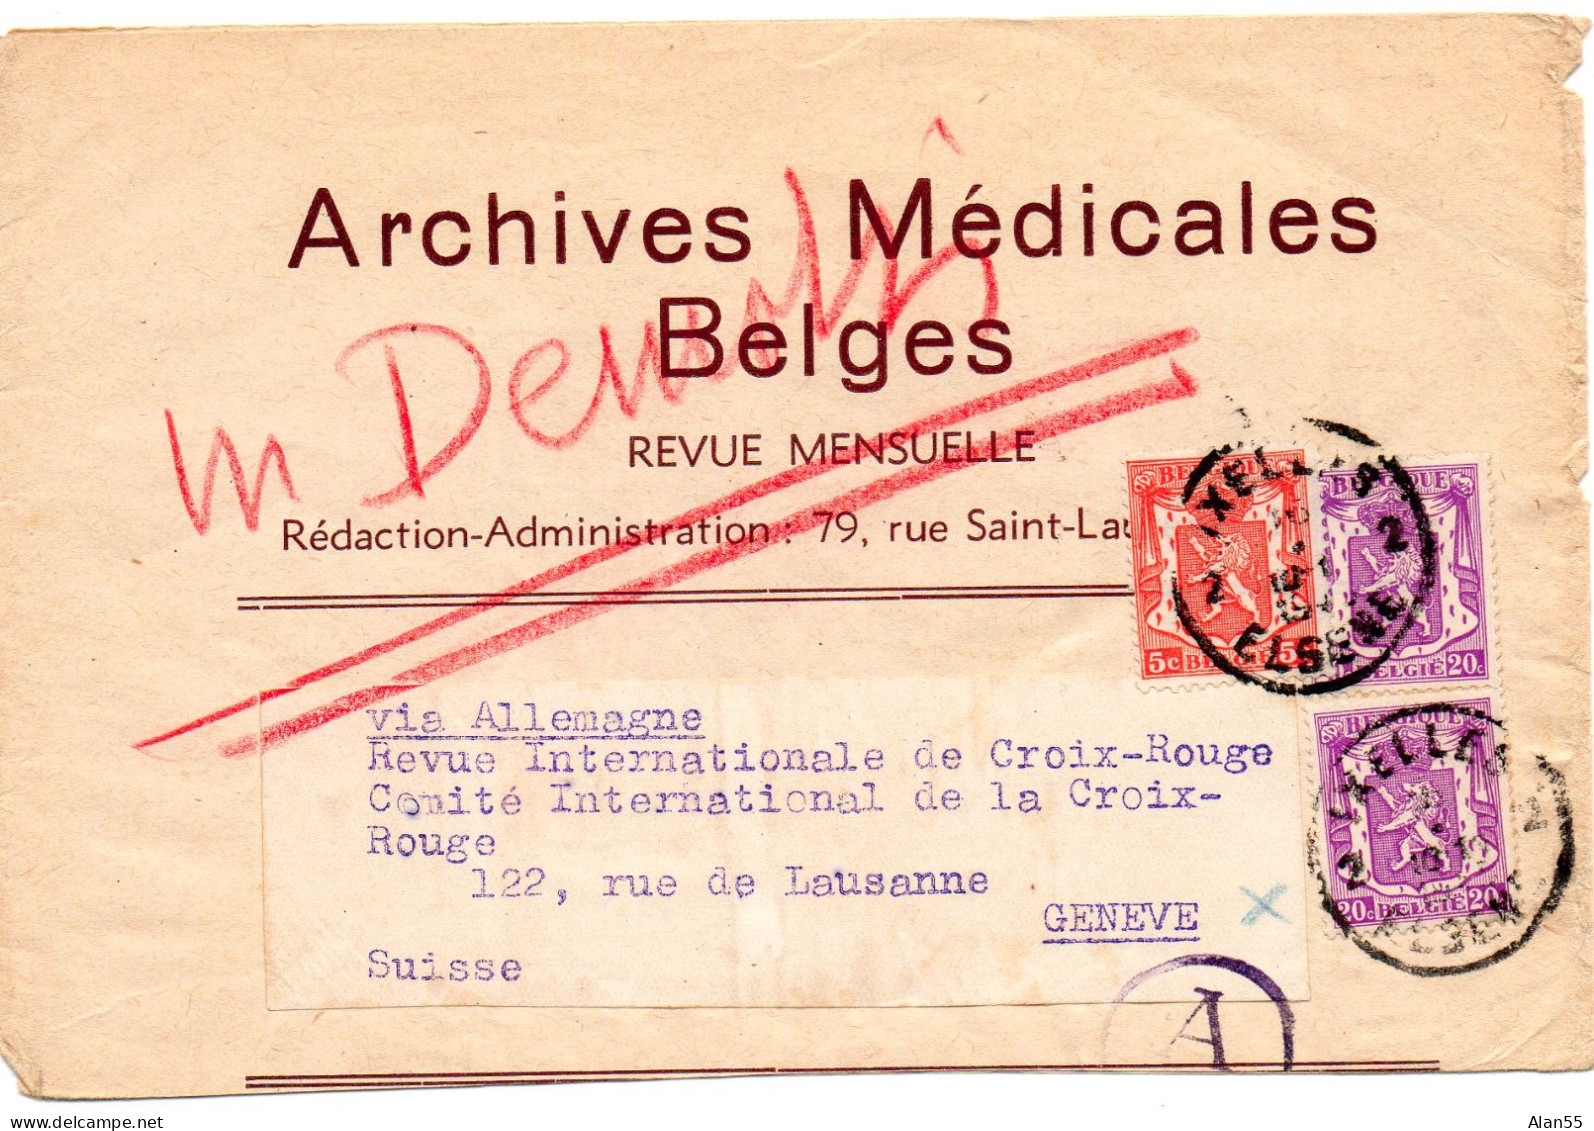 BELGIQUE.1941. "ARCHIVES MEDICALES BELGES". BANDE JOURNAL. CENSURE ALLEMANDE POUR LA SUISSE.Verso: Publicité. - Journaux [JO]